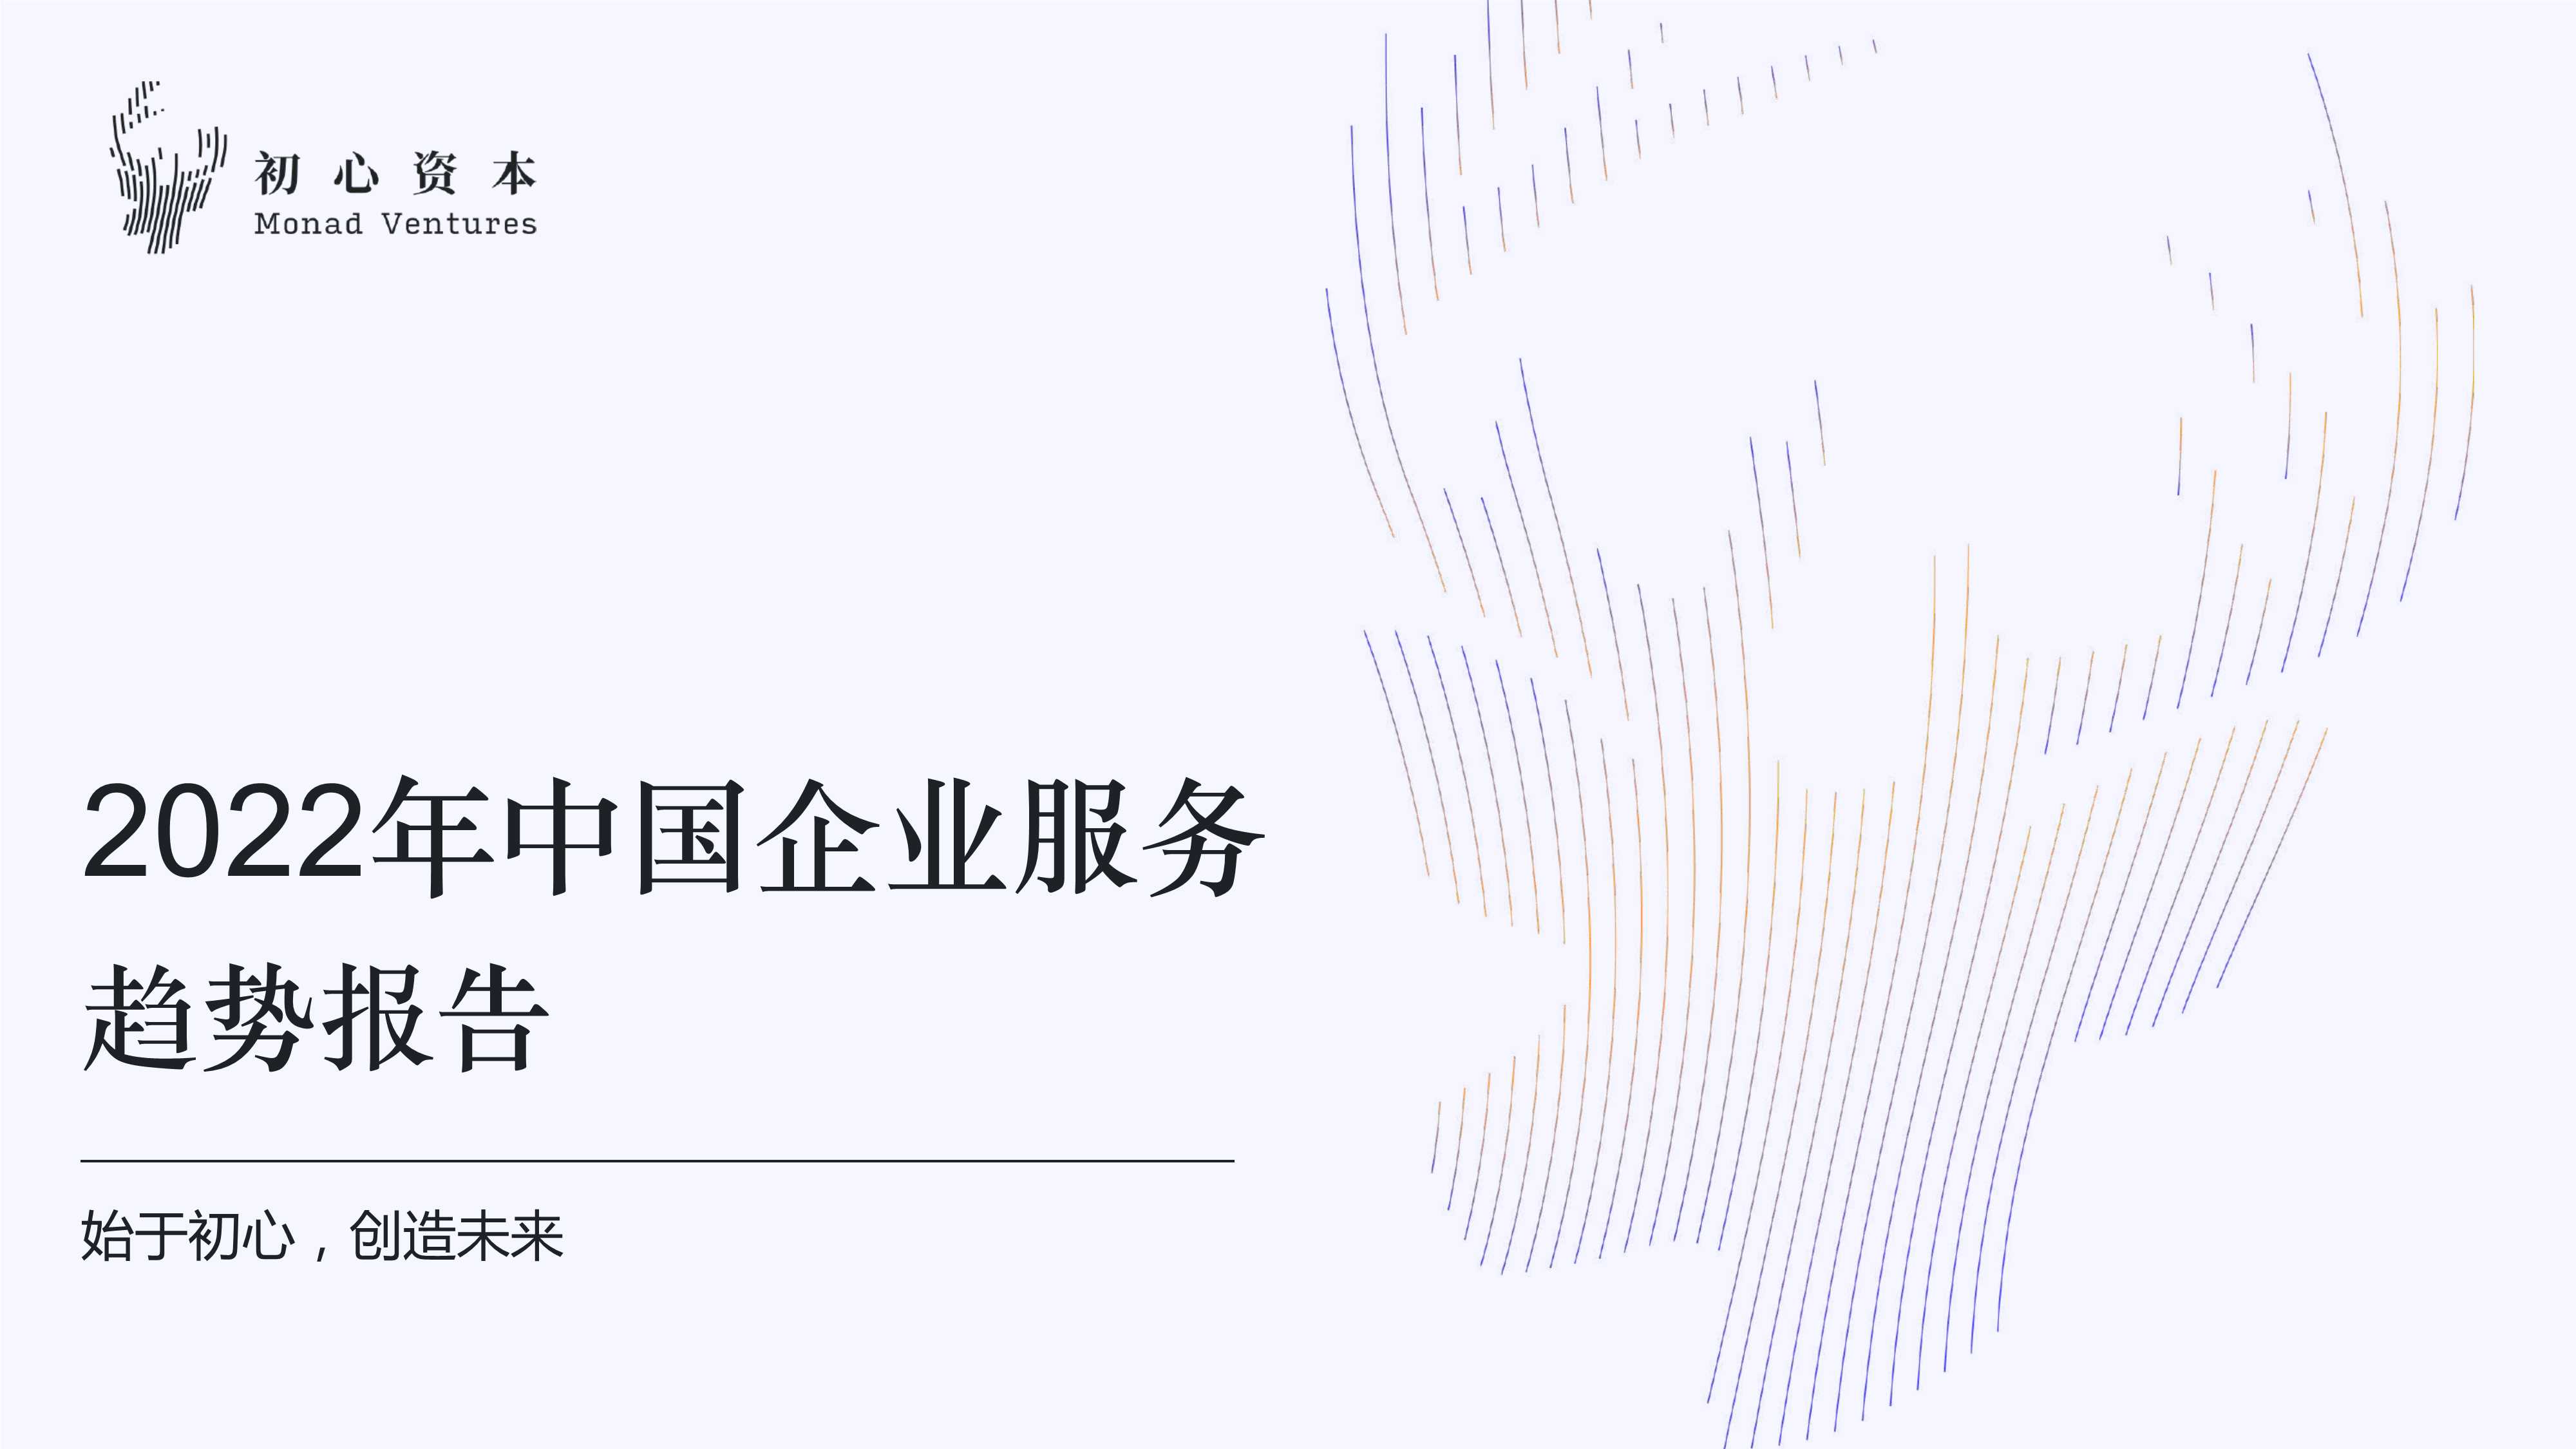 初心资本-2022年中国企业服务趋势报告-2022.04-13页